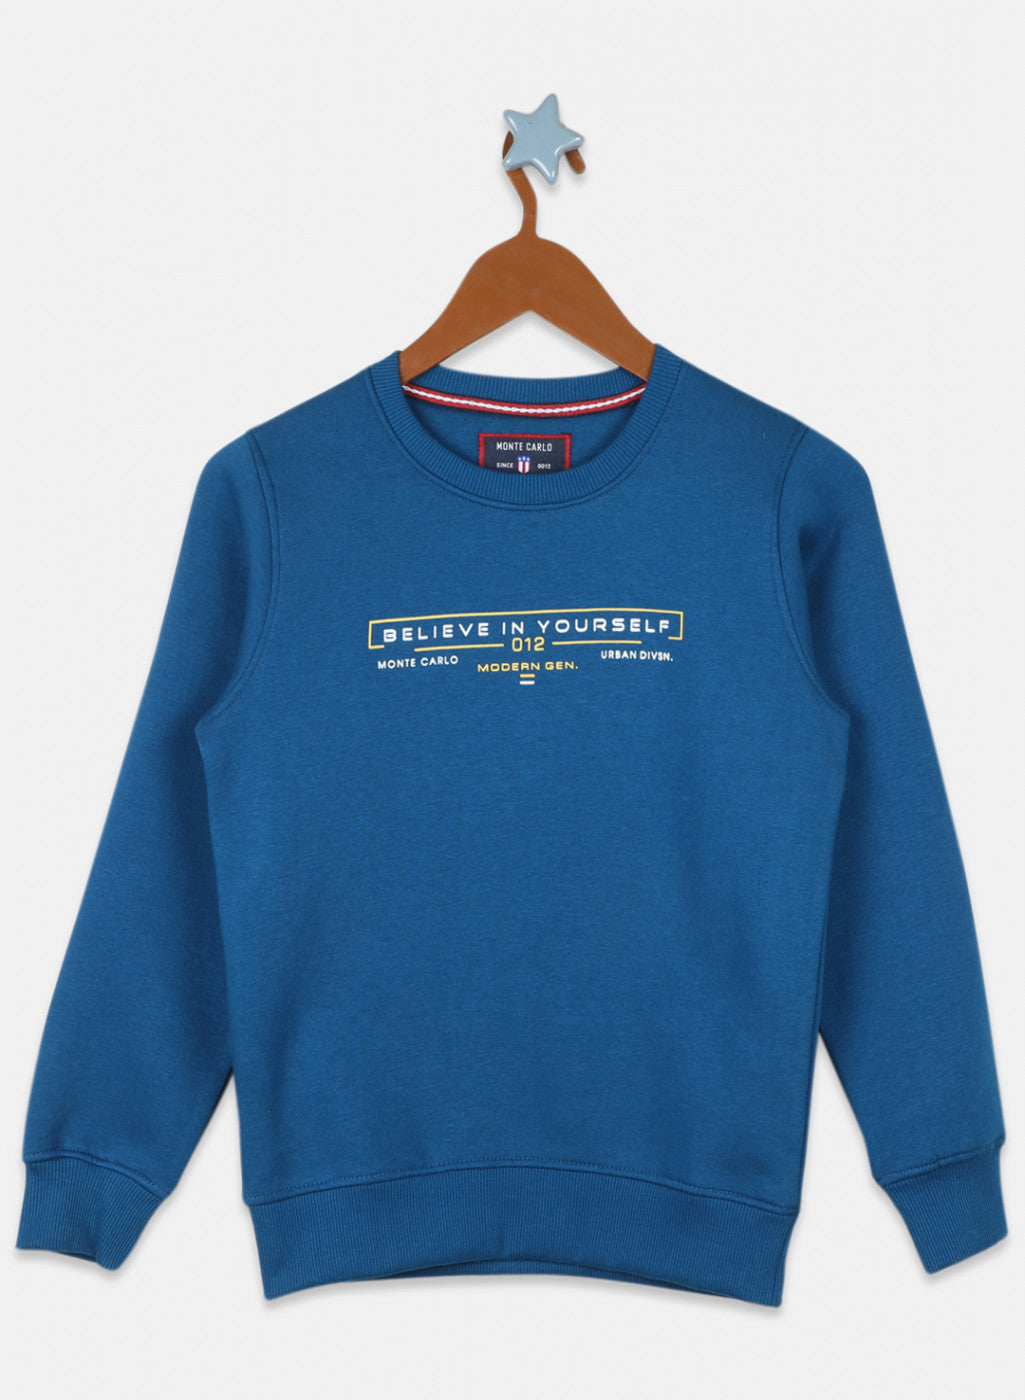 Boys Teal Blue Printed Sweatshirt